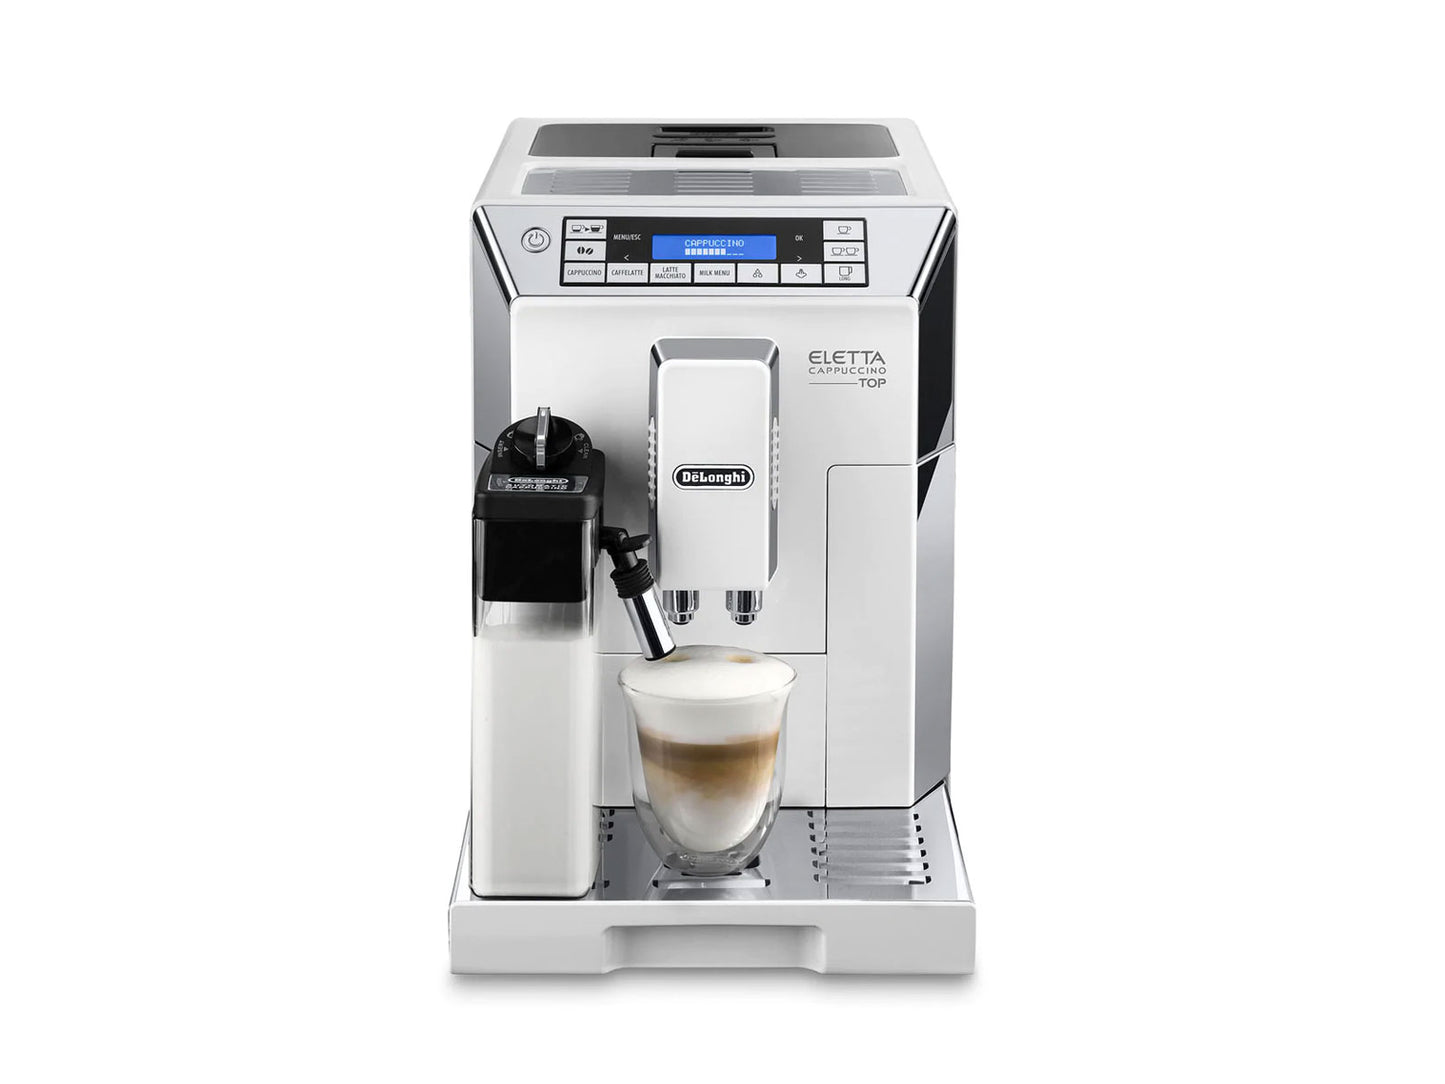 DeLonghi Eletta Cappuccino Top Fully Automatic Coffee Machine